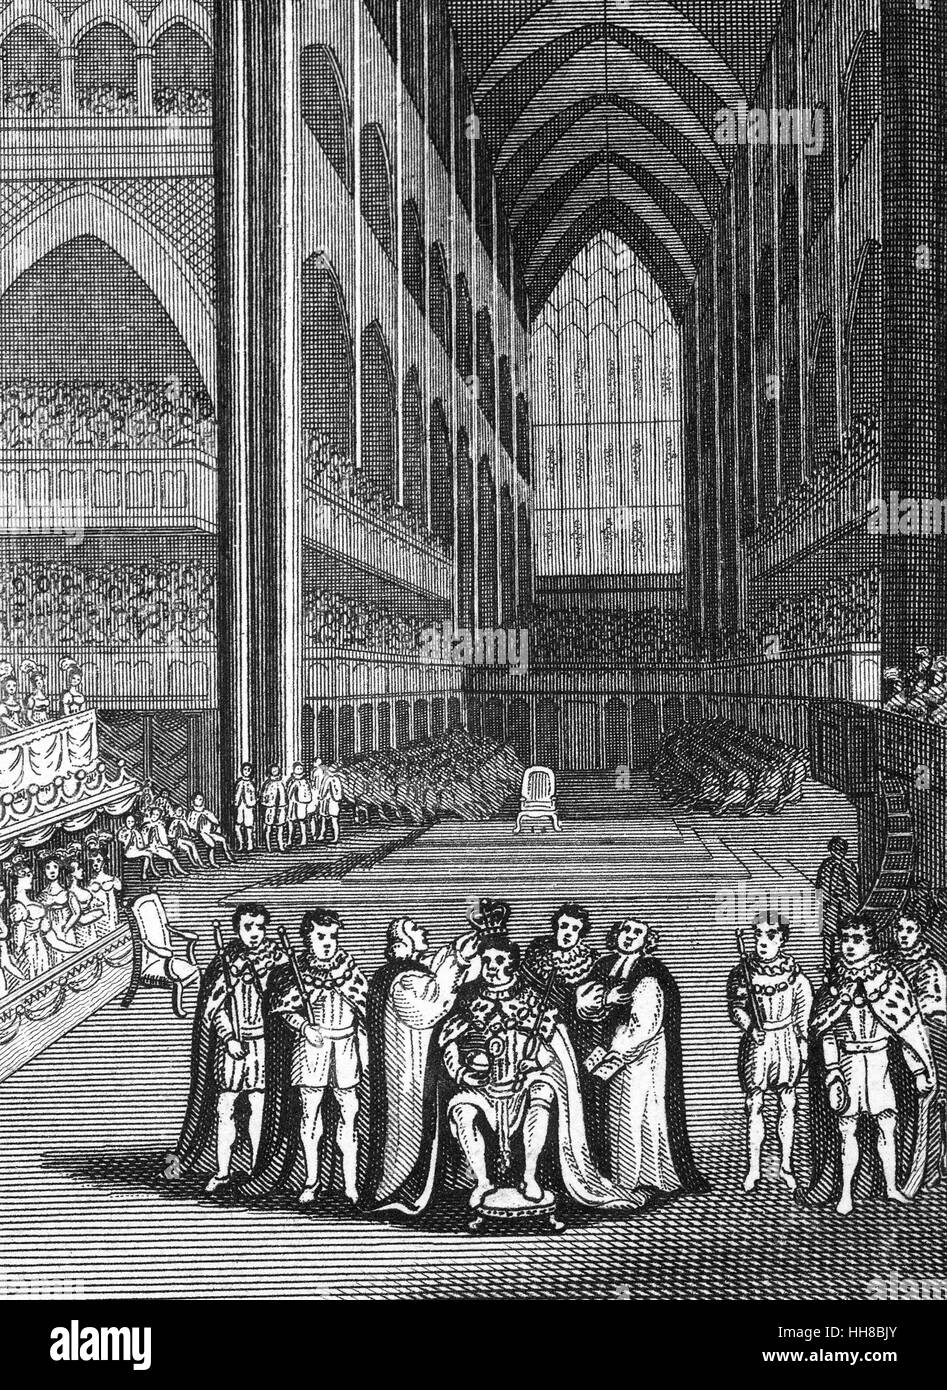 Die Krönung von König Henry VIII (1491-1547) in der Westminster Abbey am 21 April 1509. Heinrich war der zweite Tudor Monarch, Nachfolger seines Vaters Heinrich VII. Stockfoto